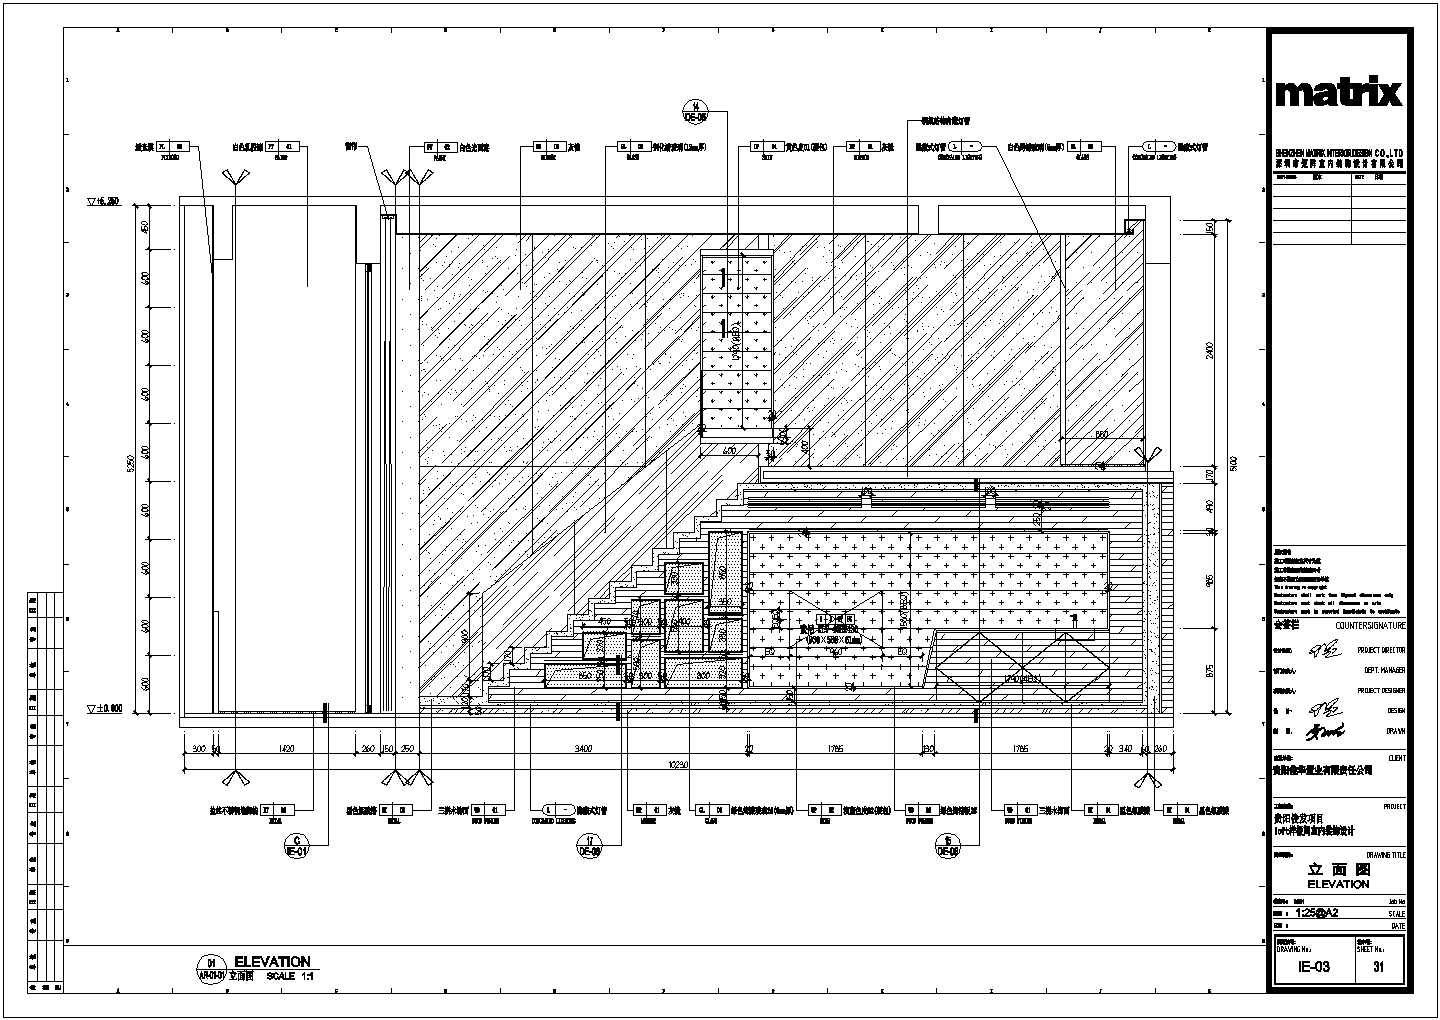 贵阳俊发办公样板间CAD结构施工图-loft办公样板间立面图